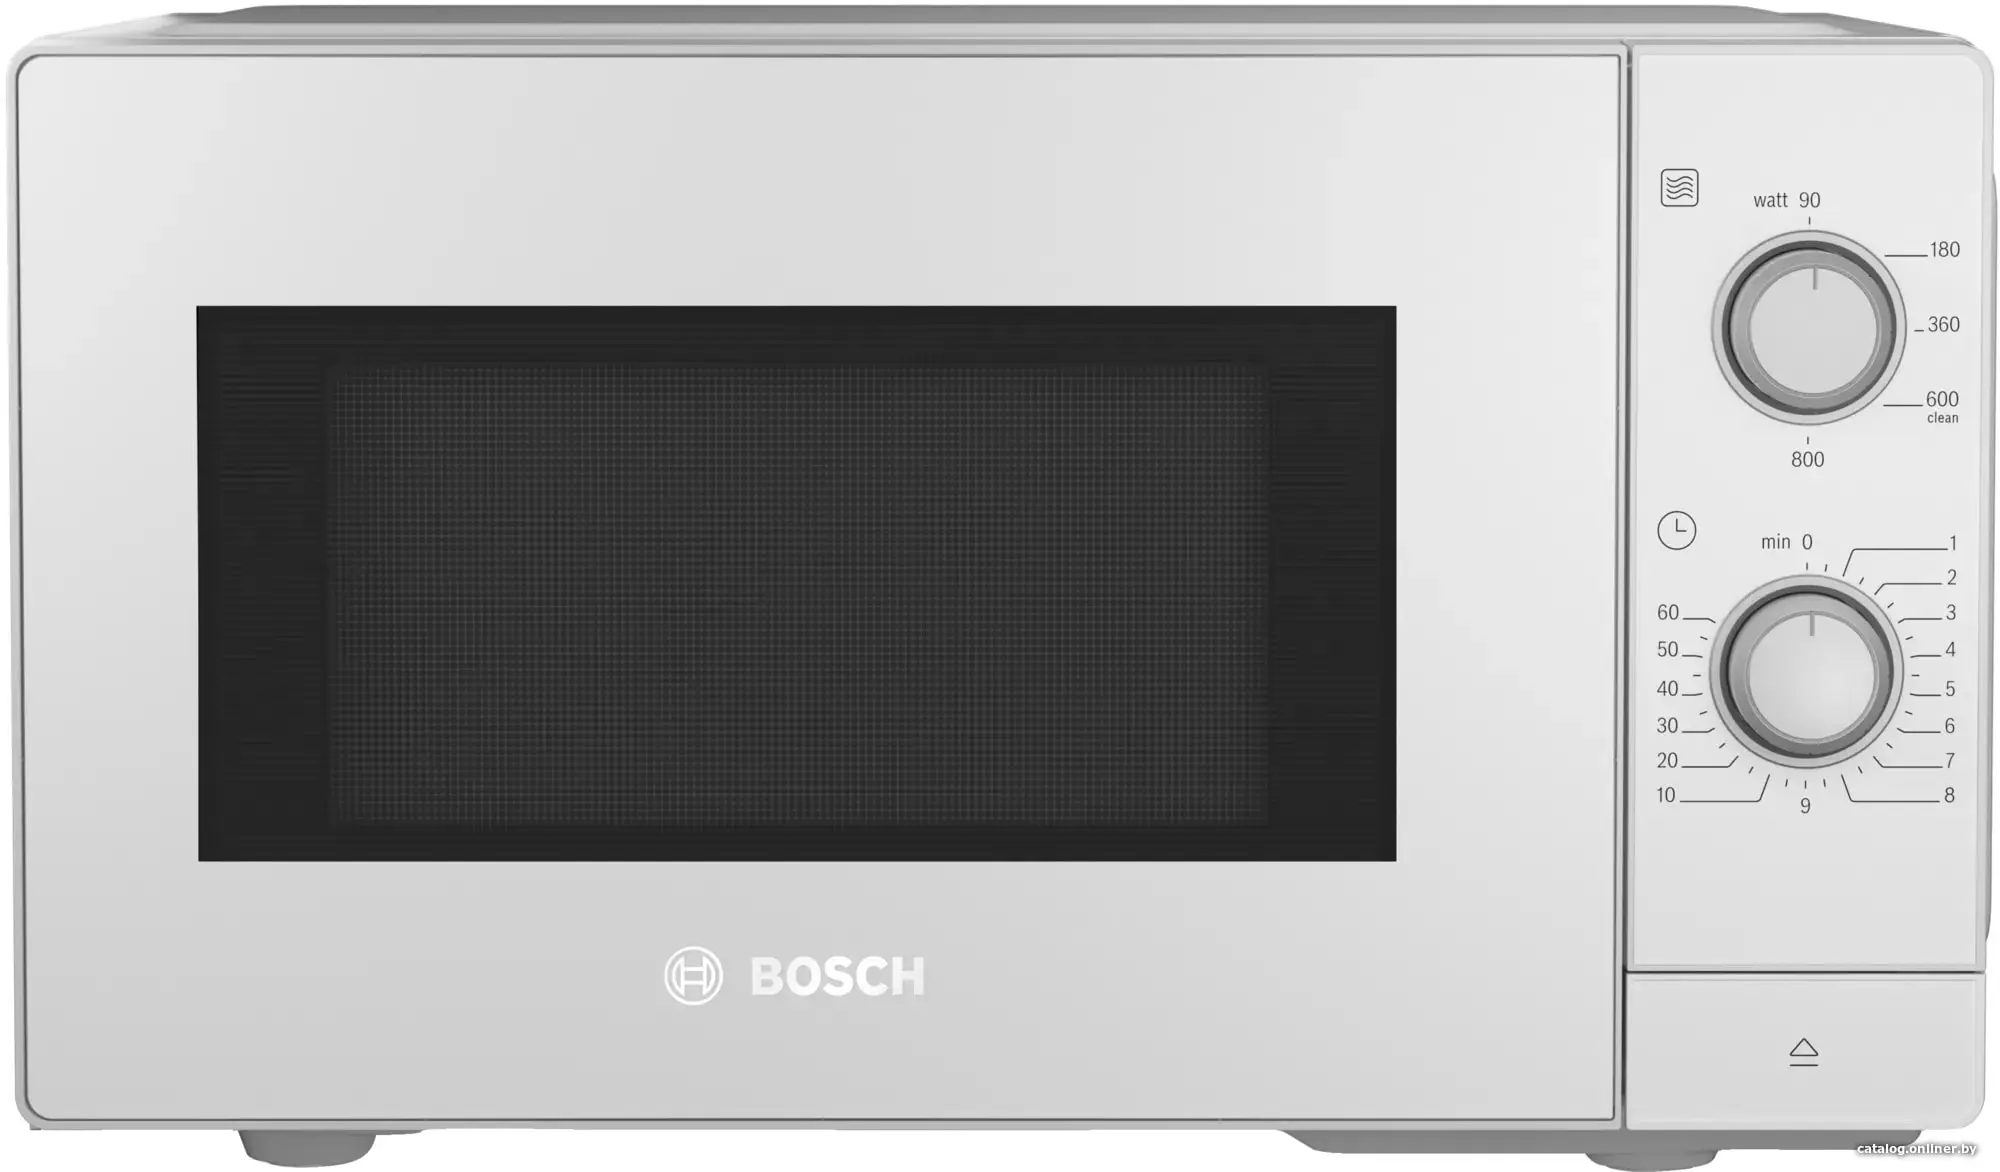 Купить Микроволновая печь Bosch FFL020MW0 белый, цена, опт и розница